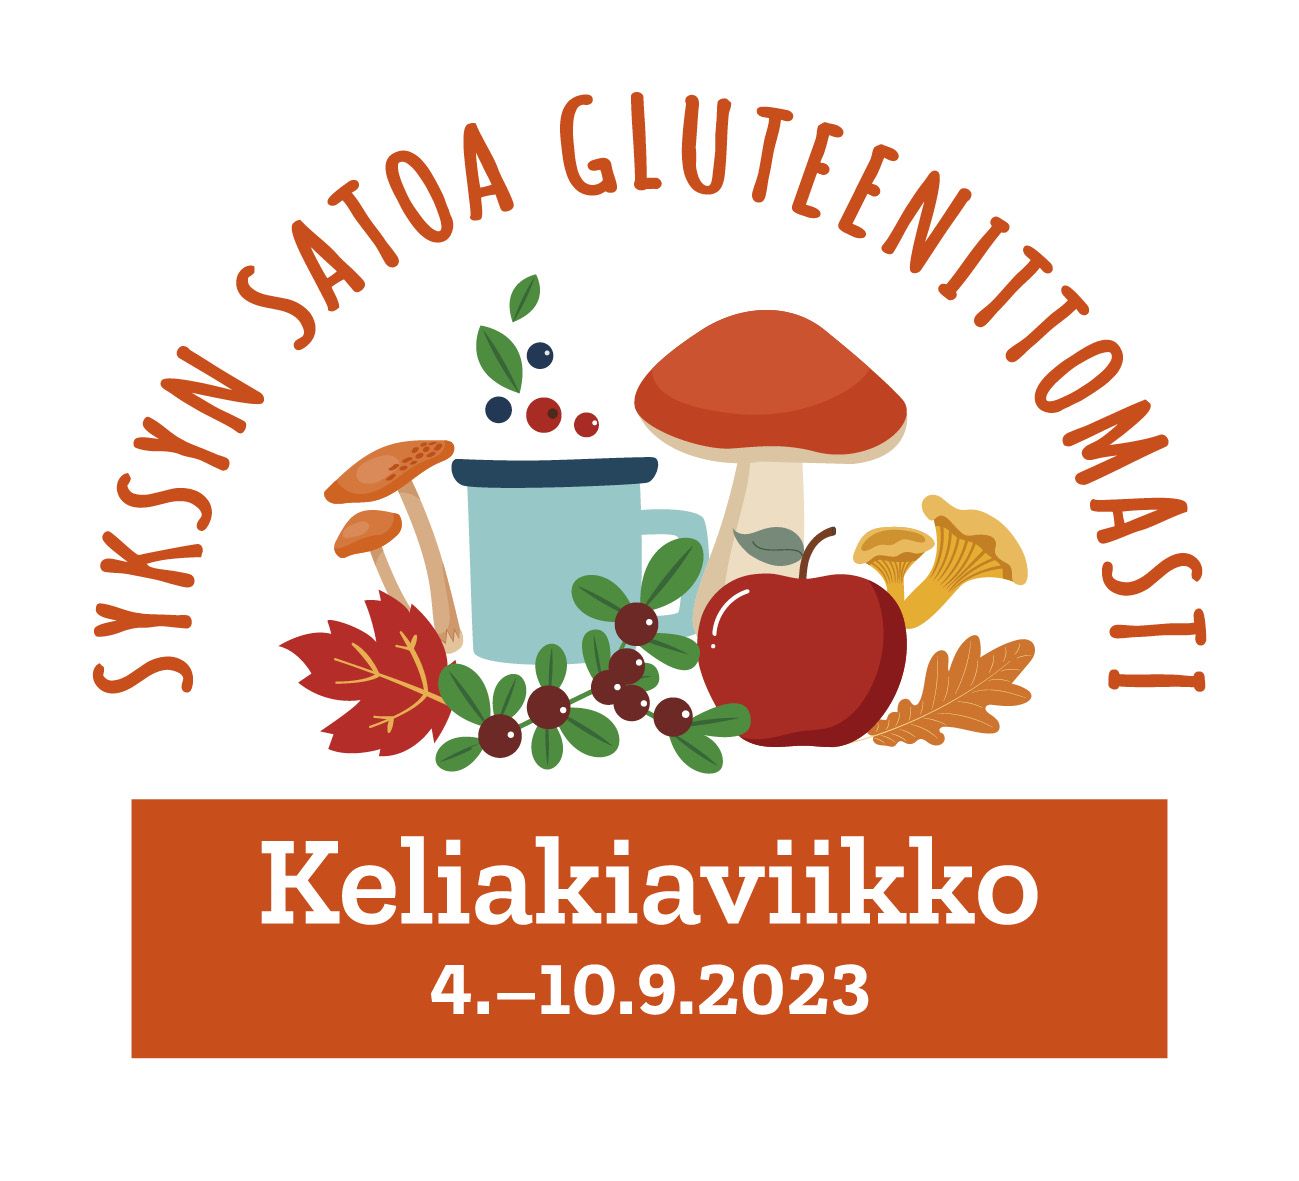 keliaviikko_logo2023_rgb.jpg